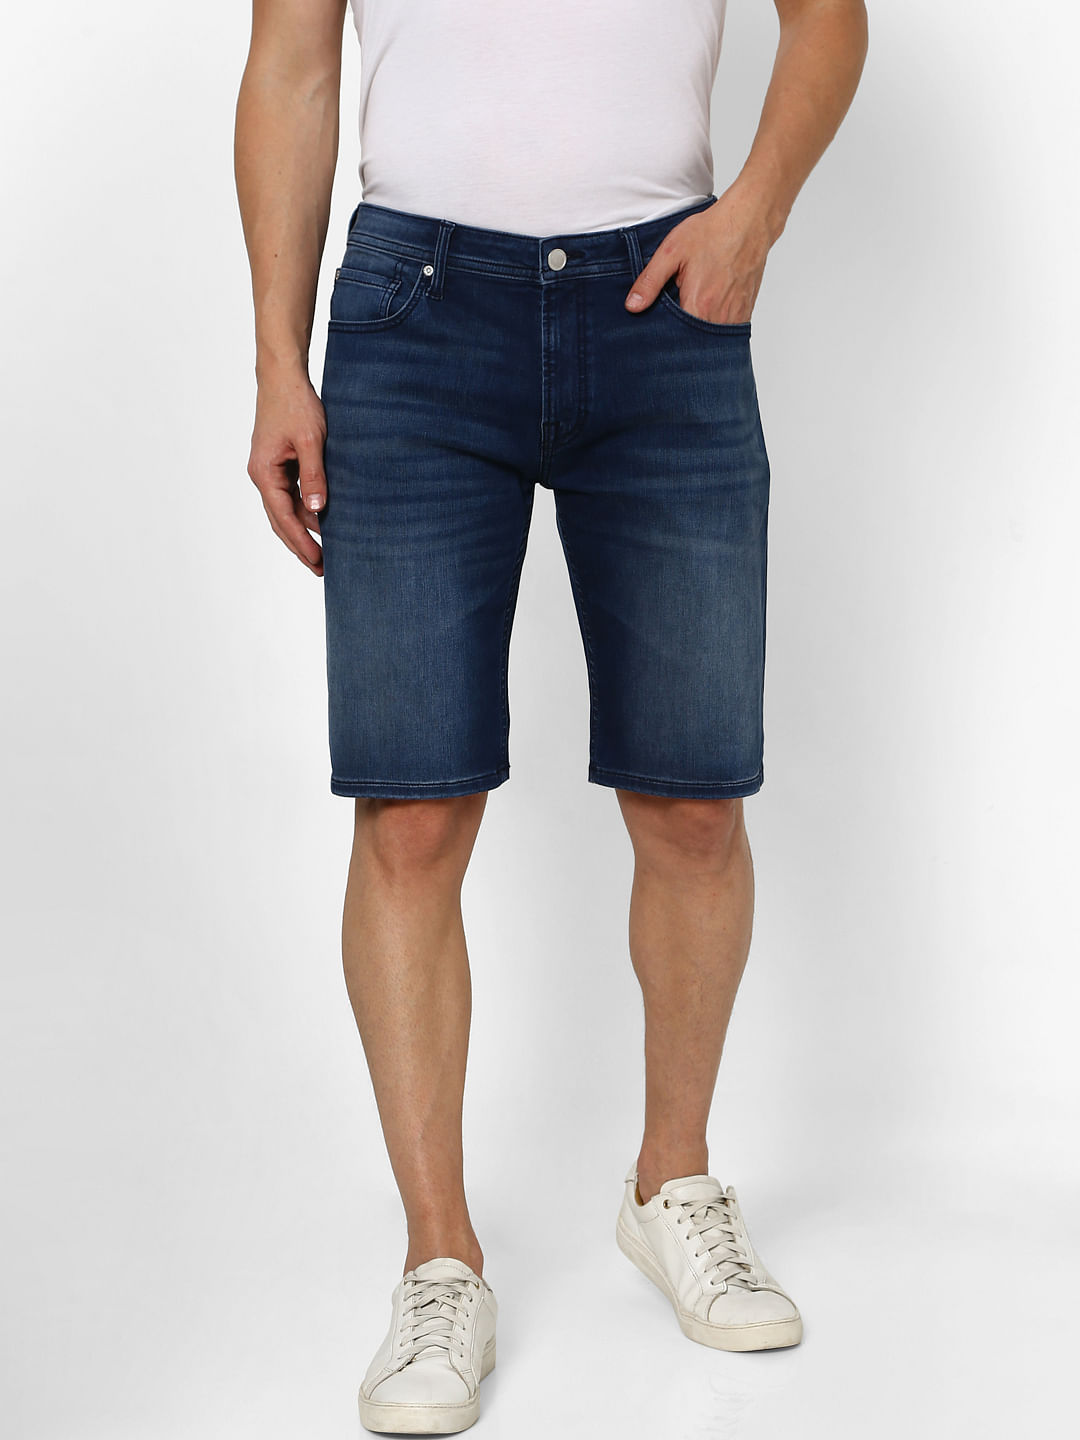 Jack & Jones shorts jeans MEN FASHION Jeans Strech Navy Blue XL discount 57% 